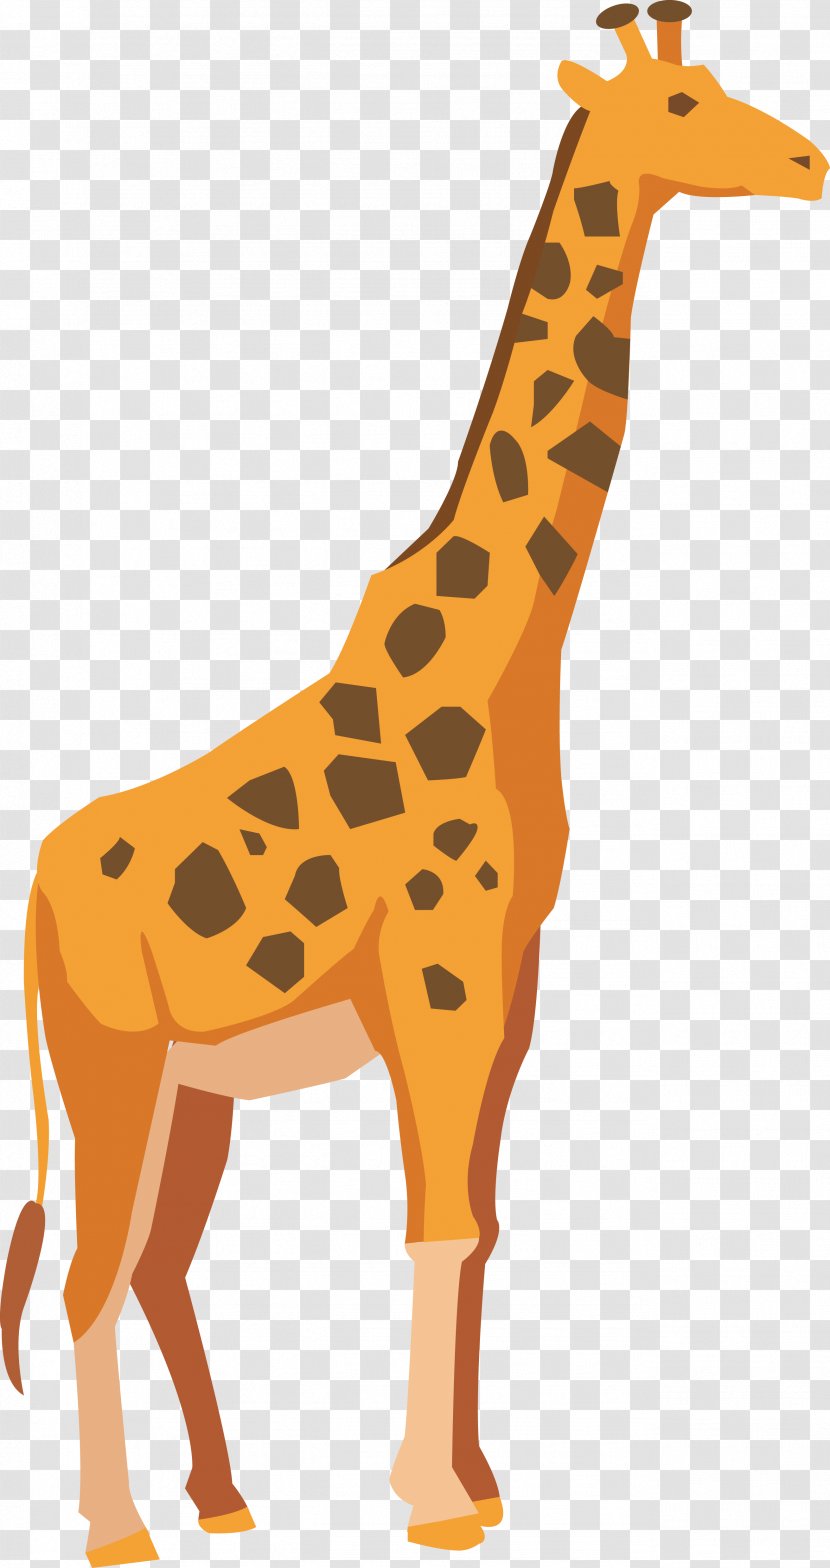 Giraffe Adobe Illustrator Drawing - Terrestrial Animal - Vector Cartoon Transparent PNG